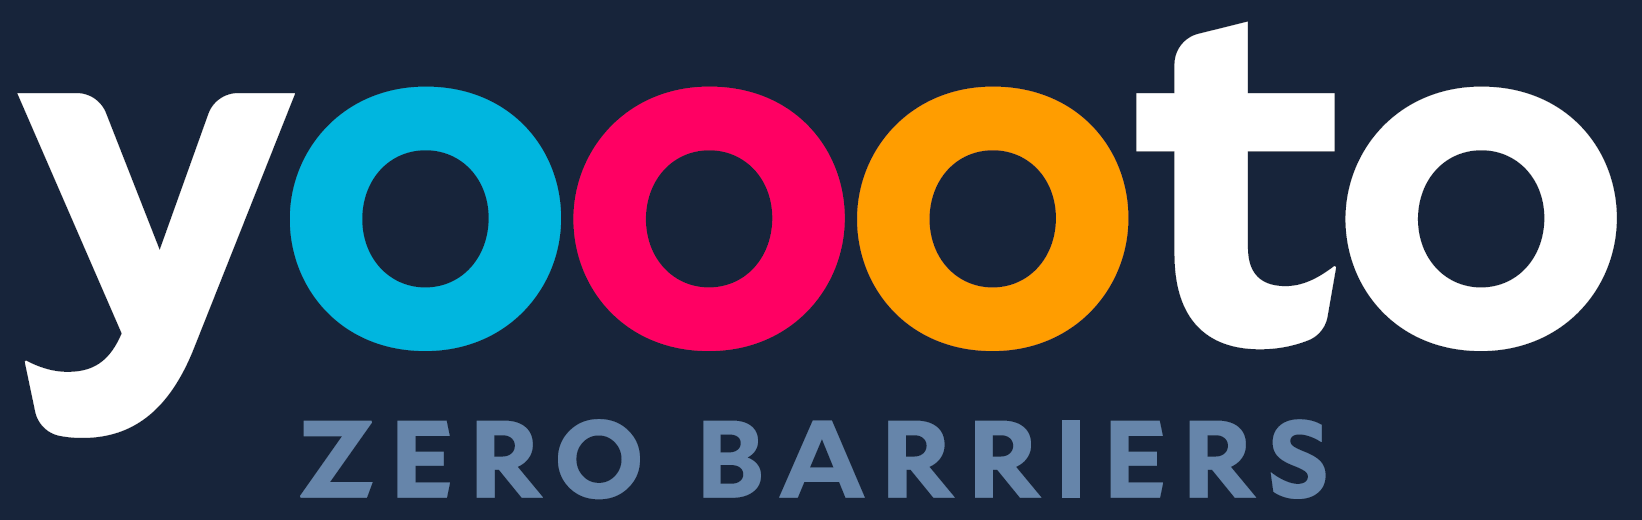 Yoooto - Zero Barriers